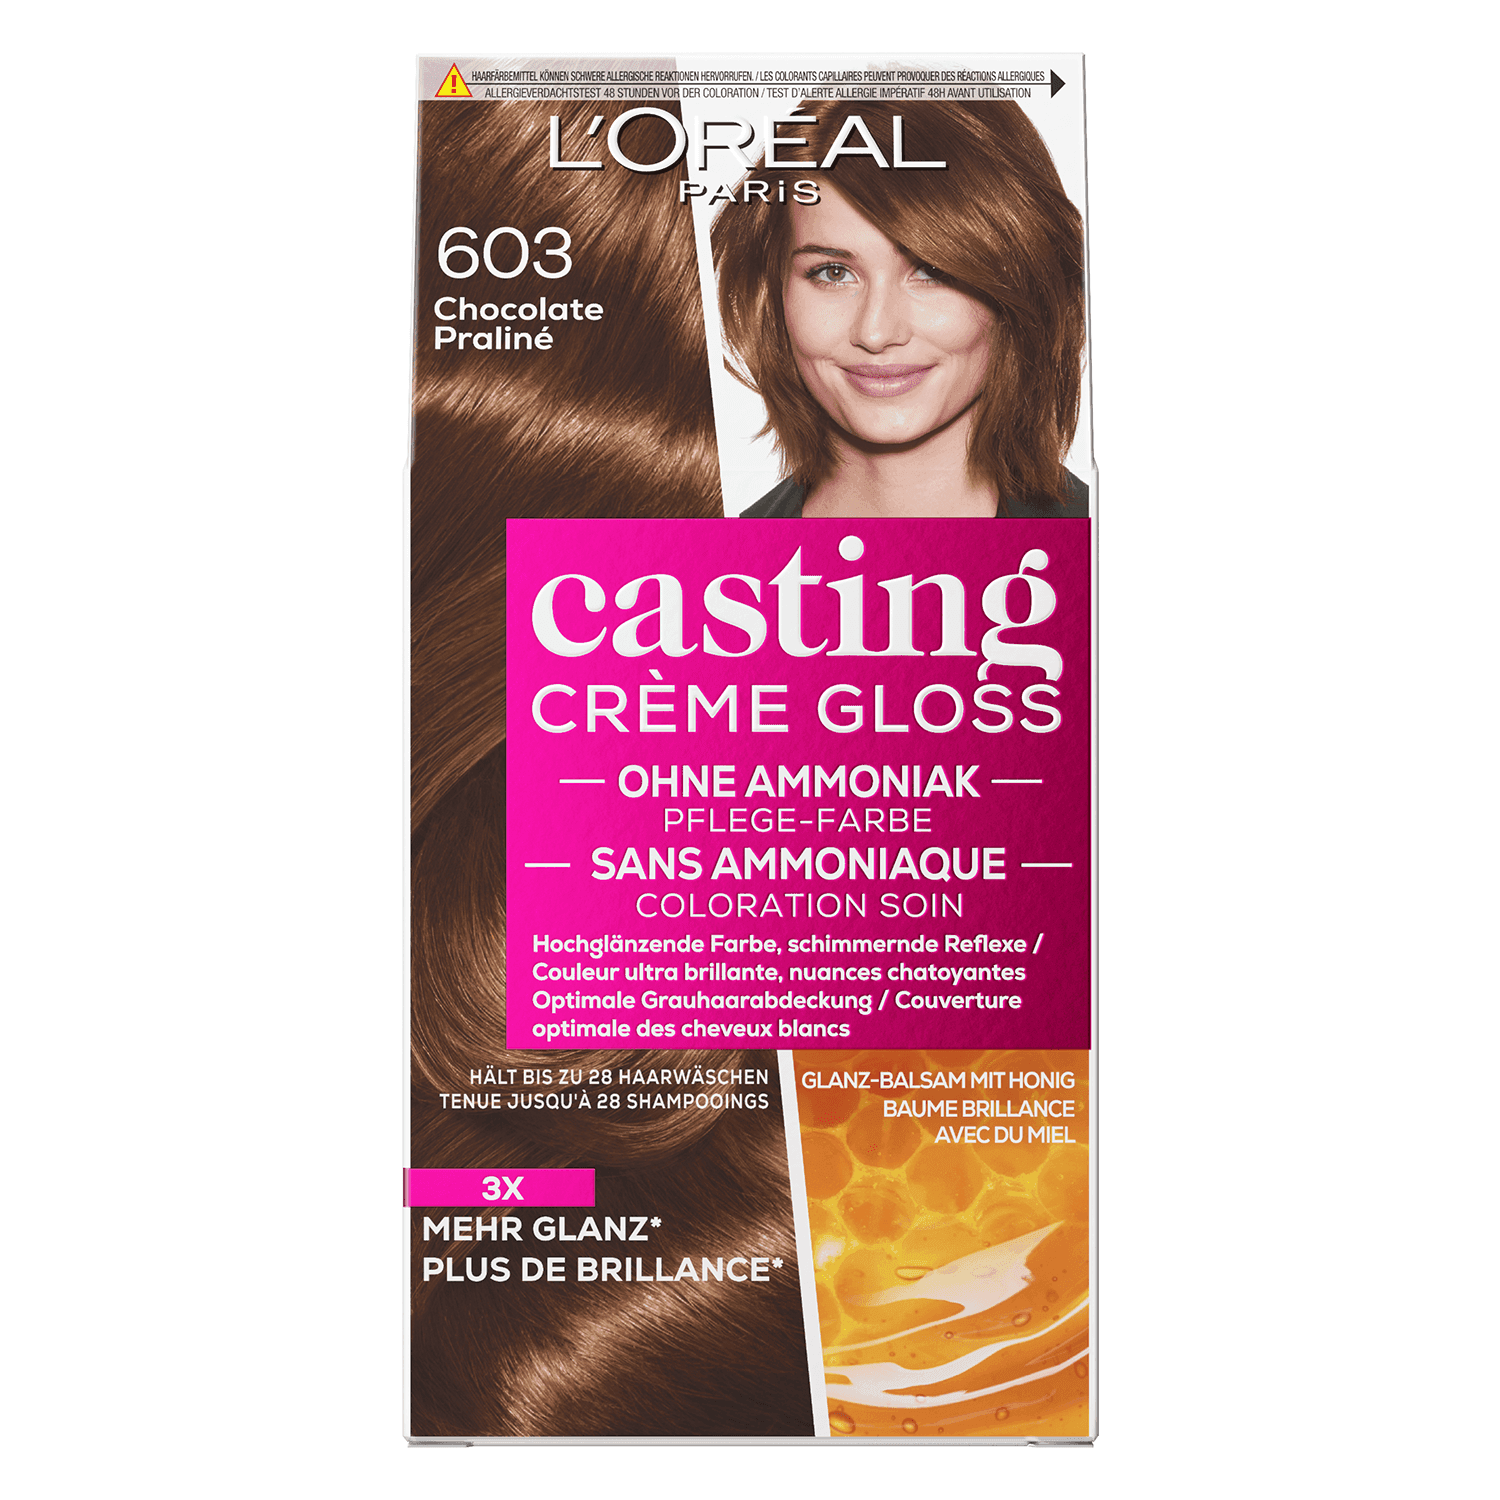 LOréal Casting - Crème Gloss 603 Chocolate Praliné